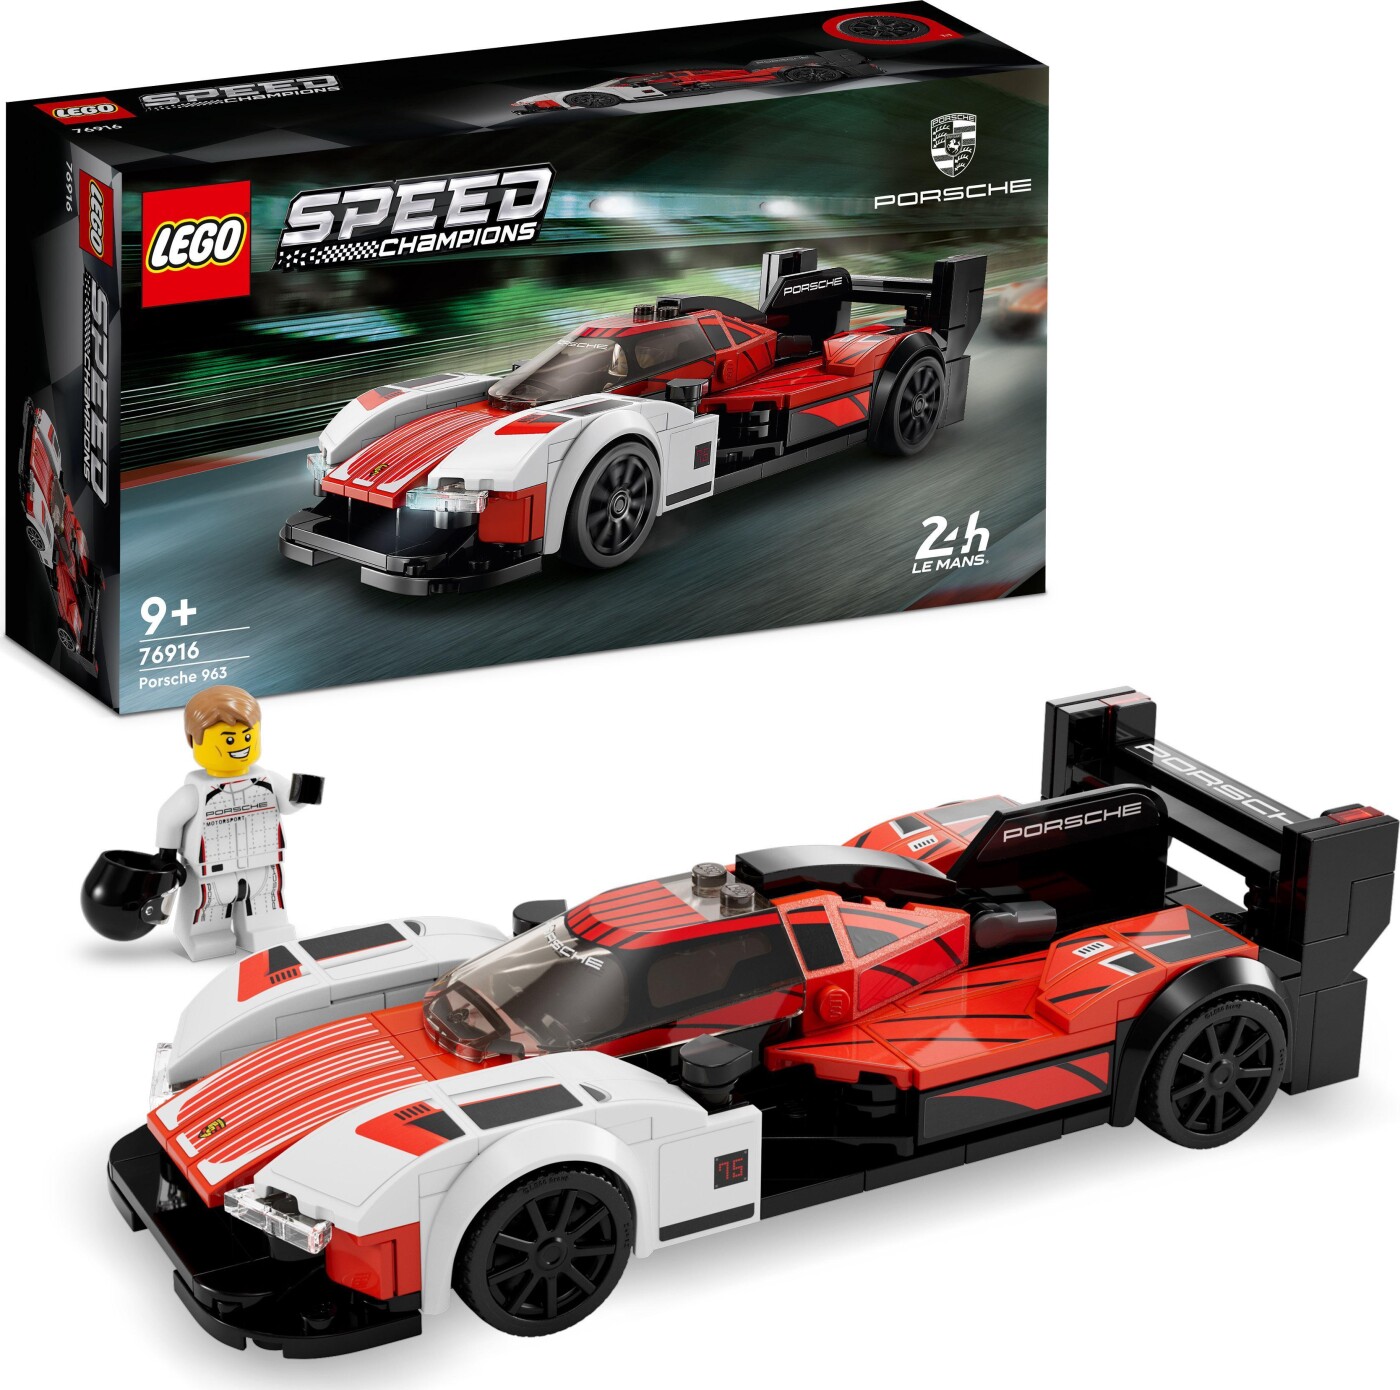 Billede af Lego Speed Champions - Porsche 963 - 76916 hos Gucca.dk